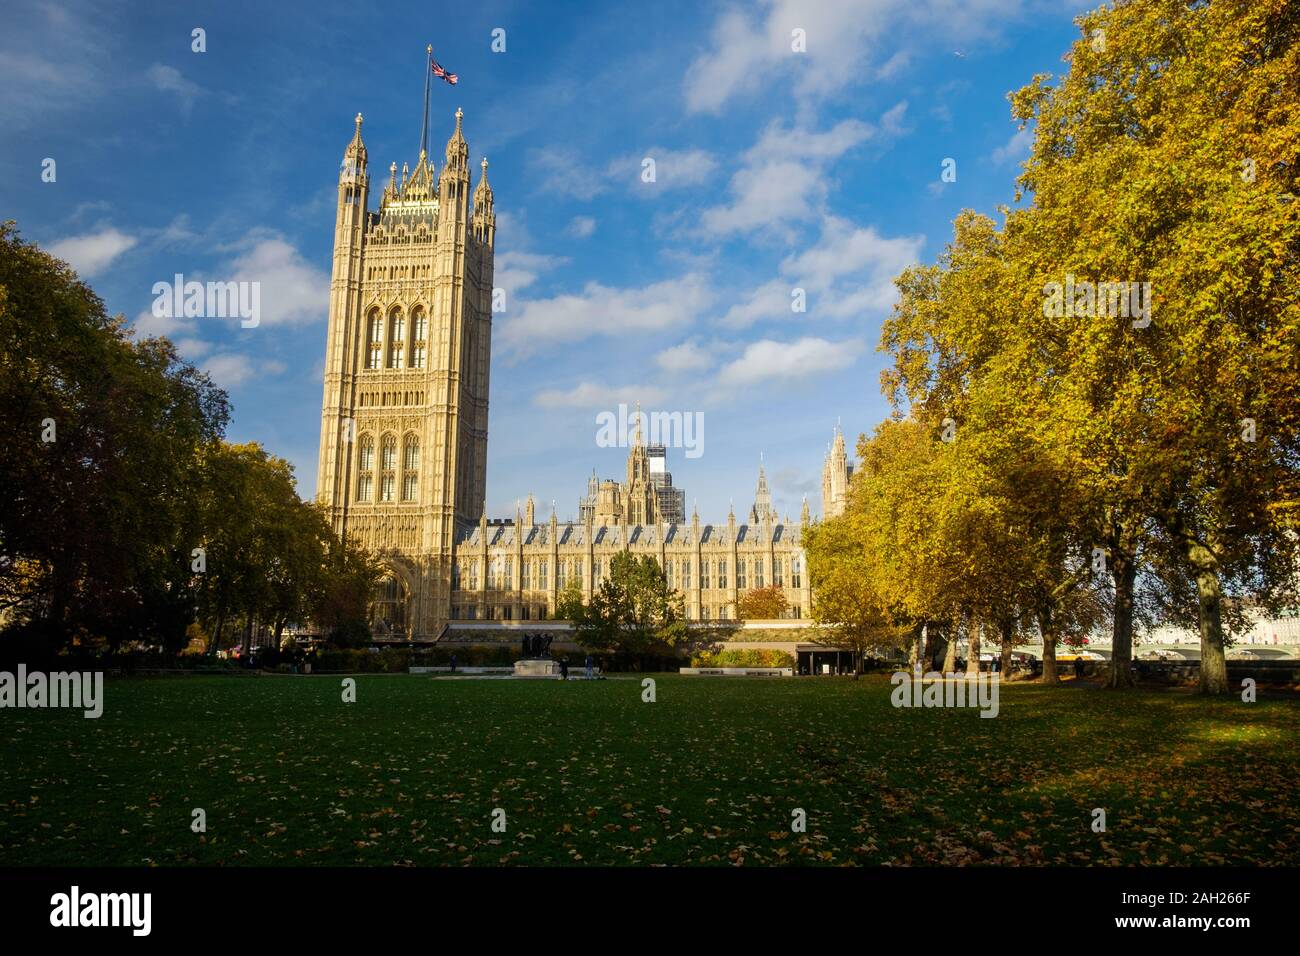 Le Palais de Westminster, avec à gauche la Tour Victoria, est l'un des symboles de Londres. Au premier plan, il y a des jardins publics. Banque D'Images